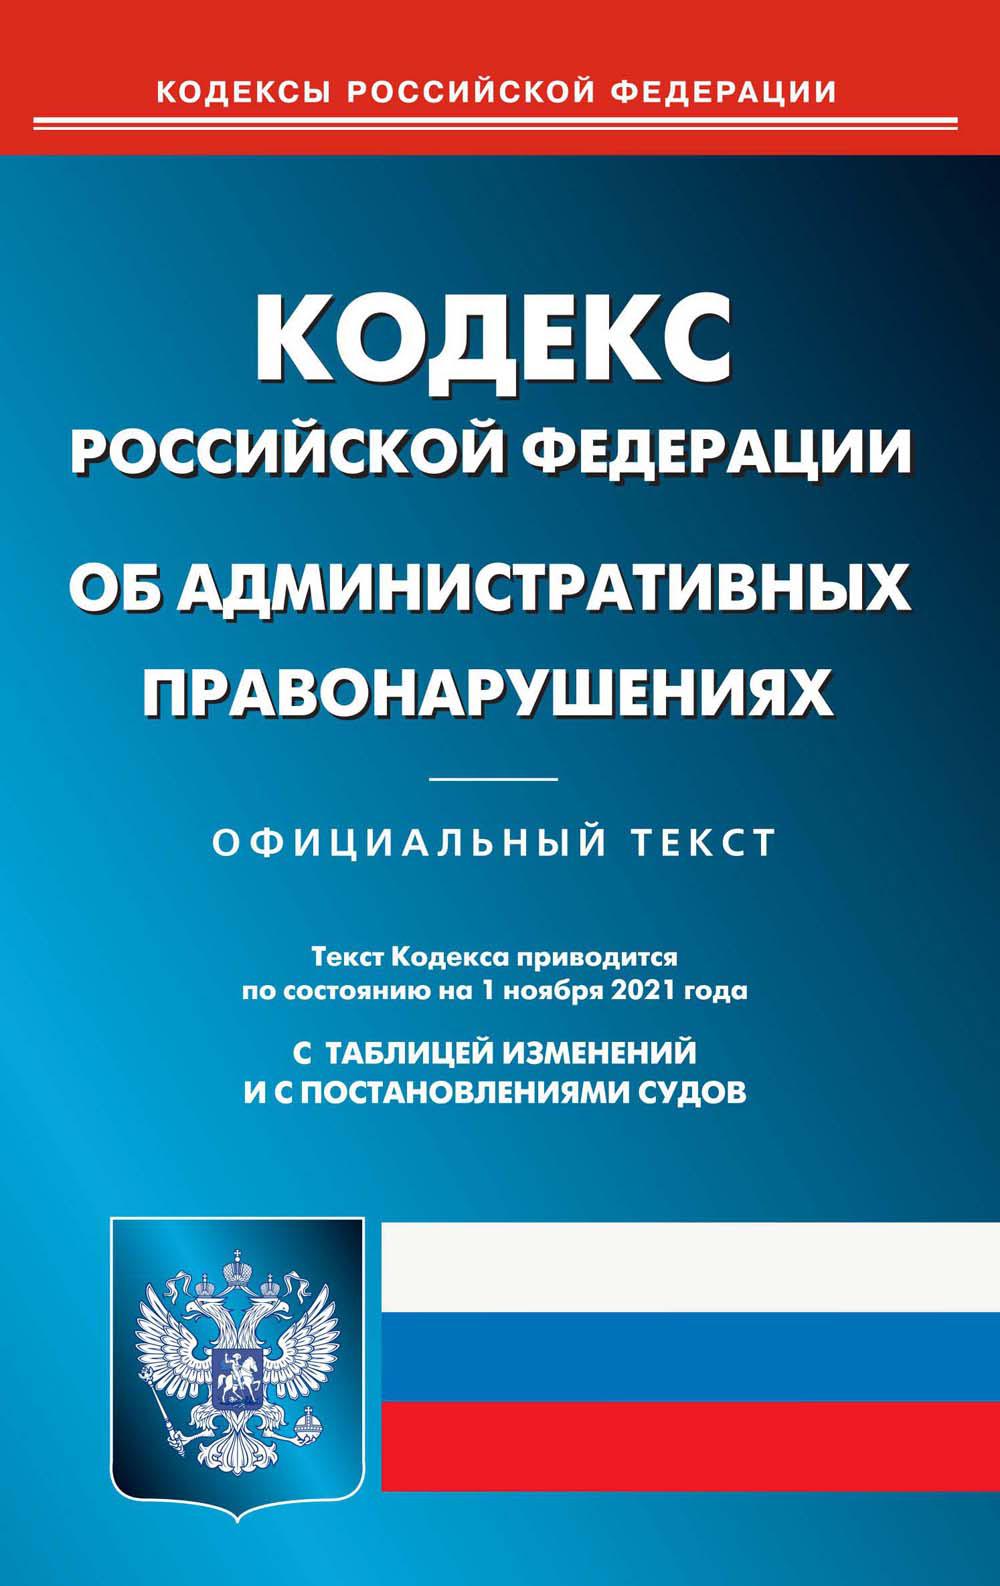 Кодекс Российской Федерации об административных правонарушениях (по сост. на 01.11.2021 г.)